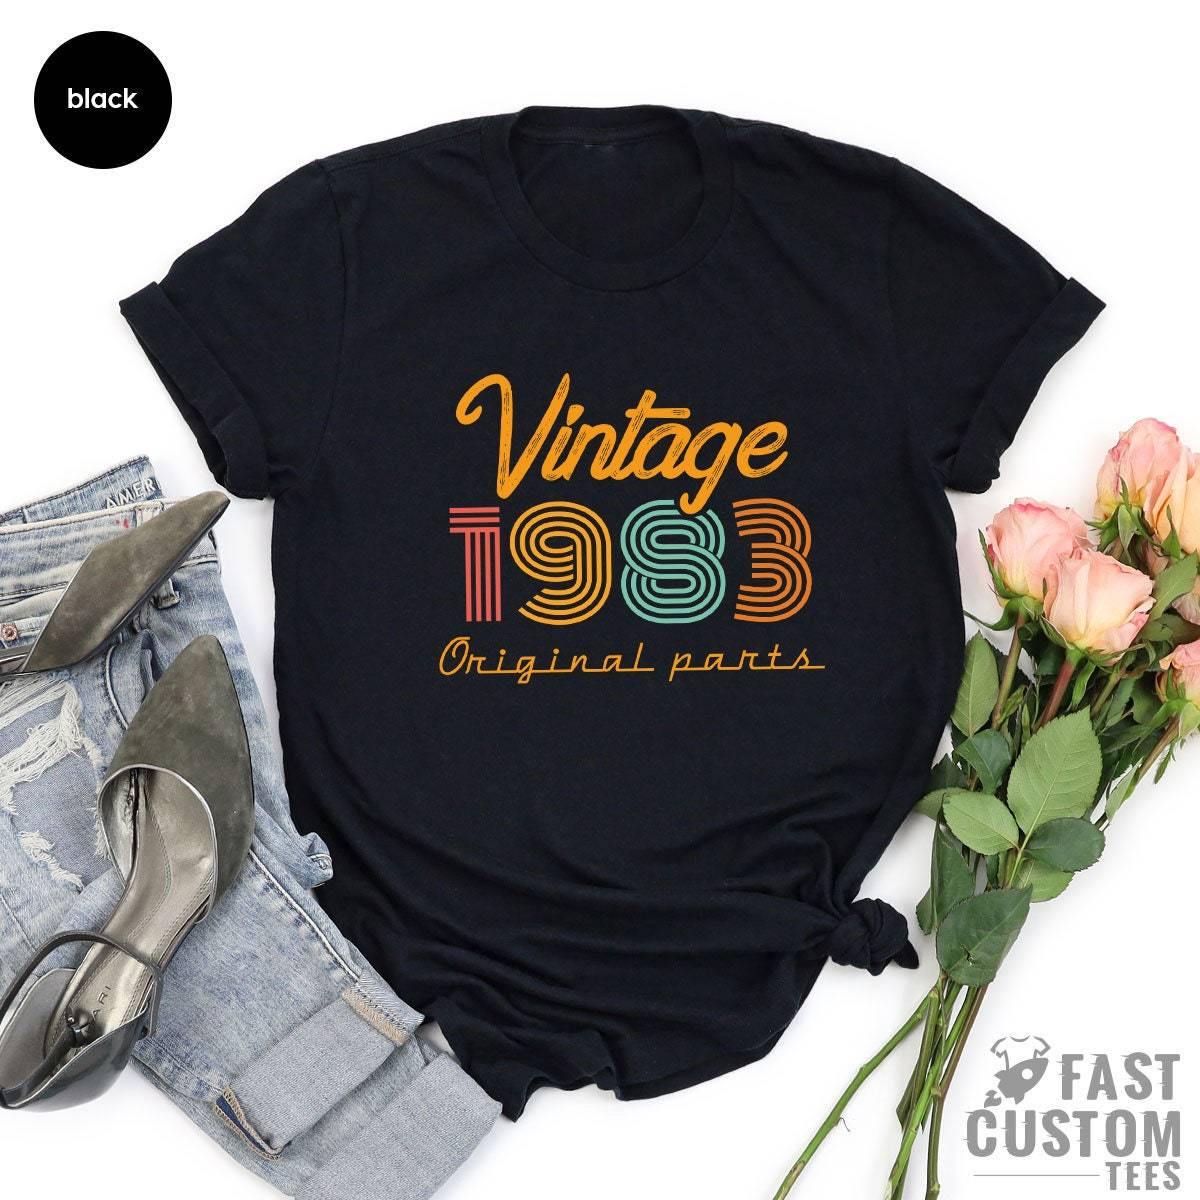 38th Birthday Shirt, Vintage T Shirt, Vintage 1983 Shirt, 38th Birthday Gift For Women, 38th Birthday Shirt Men, Retro Shirt, Vintage Shirts - Fastdeliverytees.com